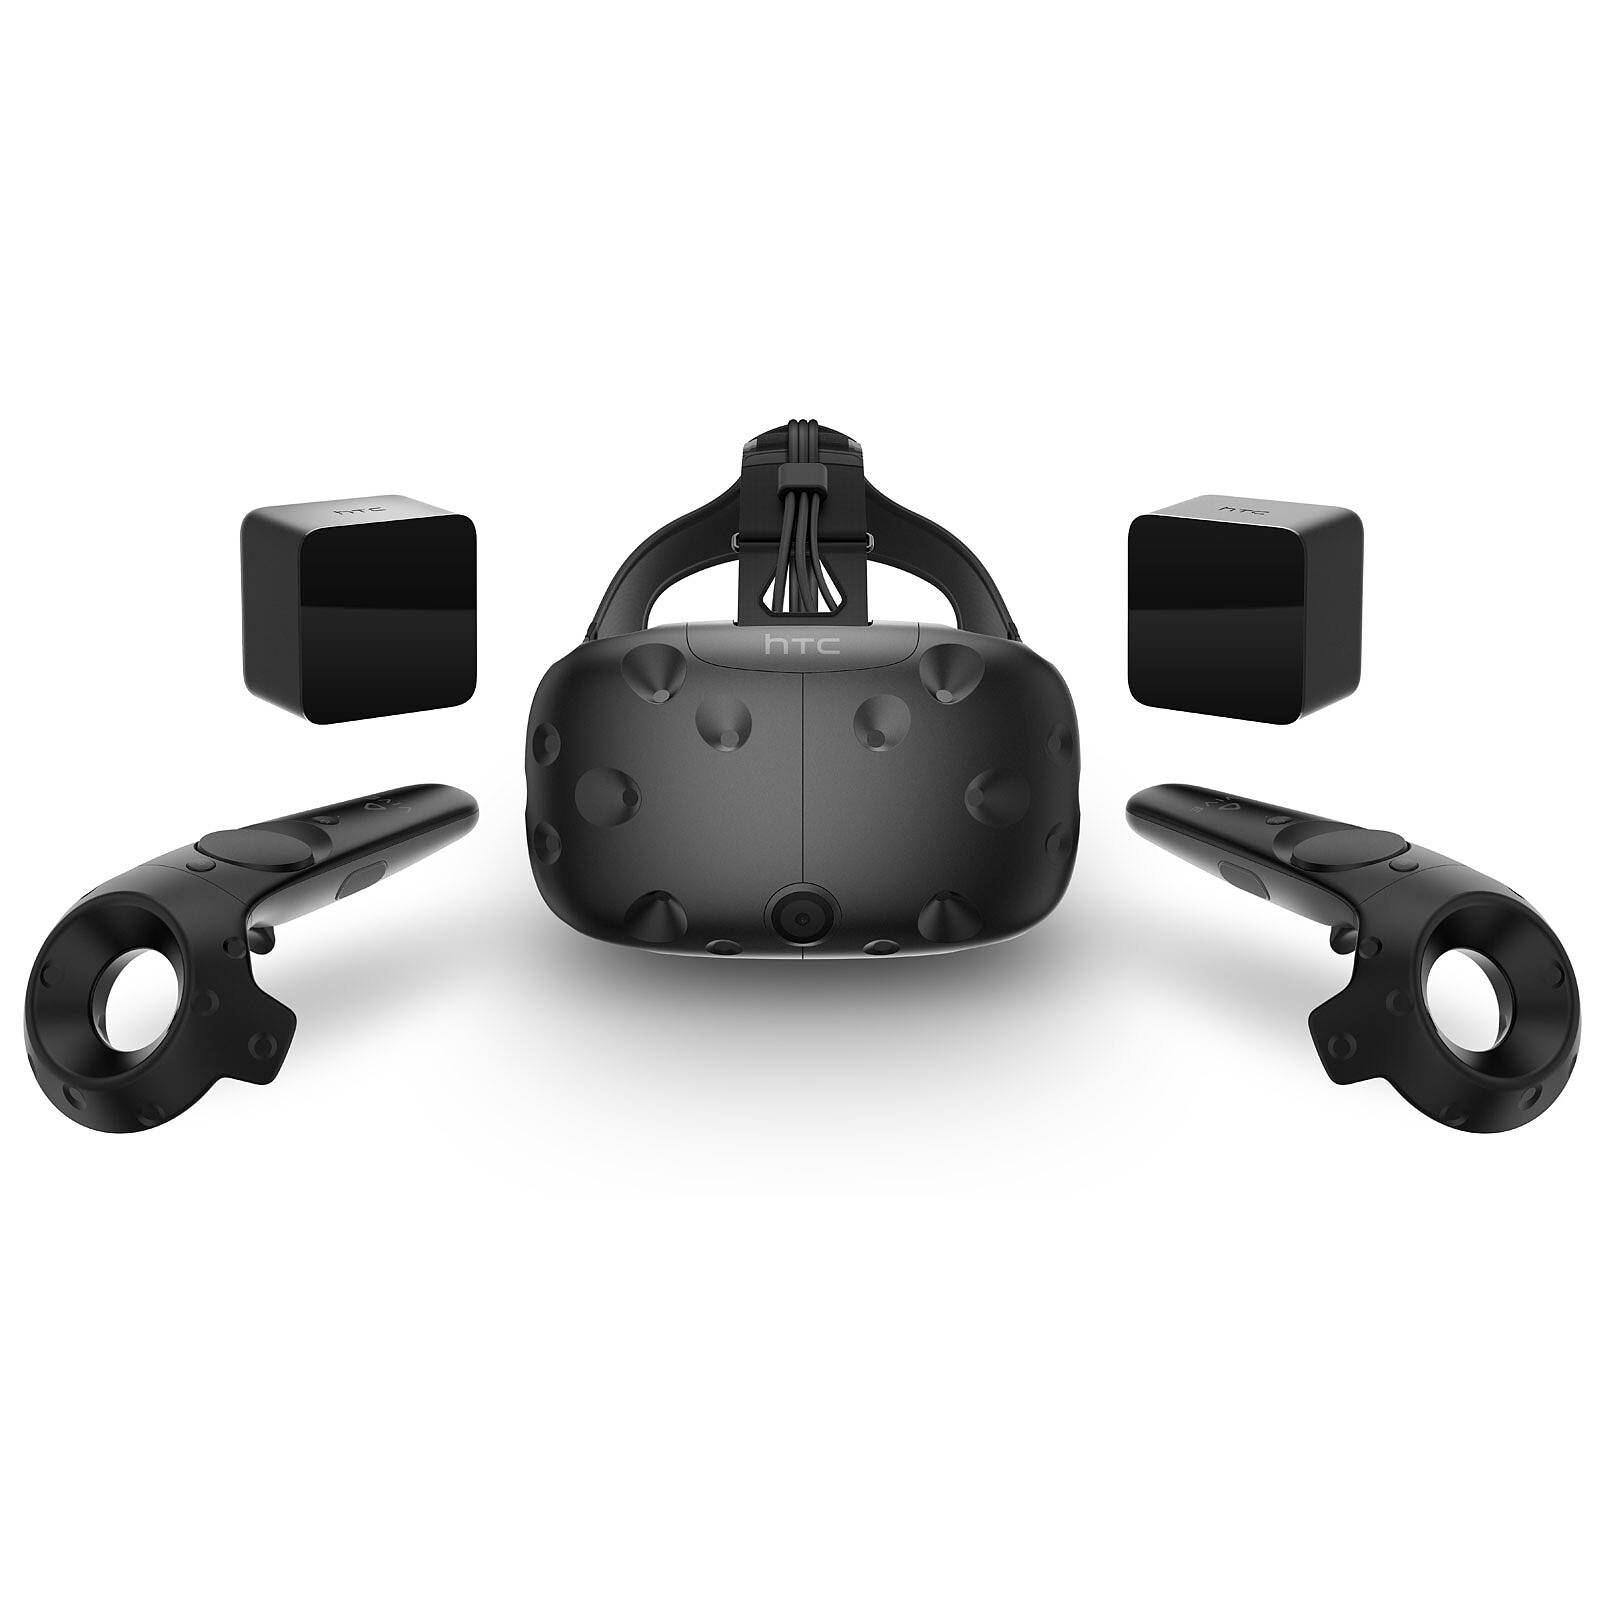 Шлемы виртуальной реальности для пк купить. VR очки HTC Vive. ВР очки HTC Vive. HTC Vive HTC-99haln007-00. VR шлем HTC.